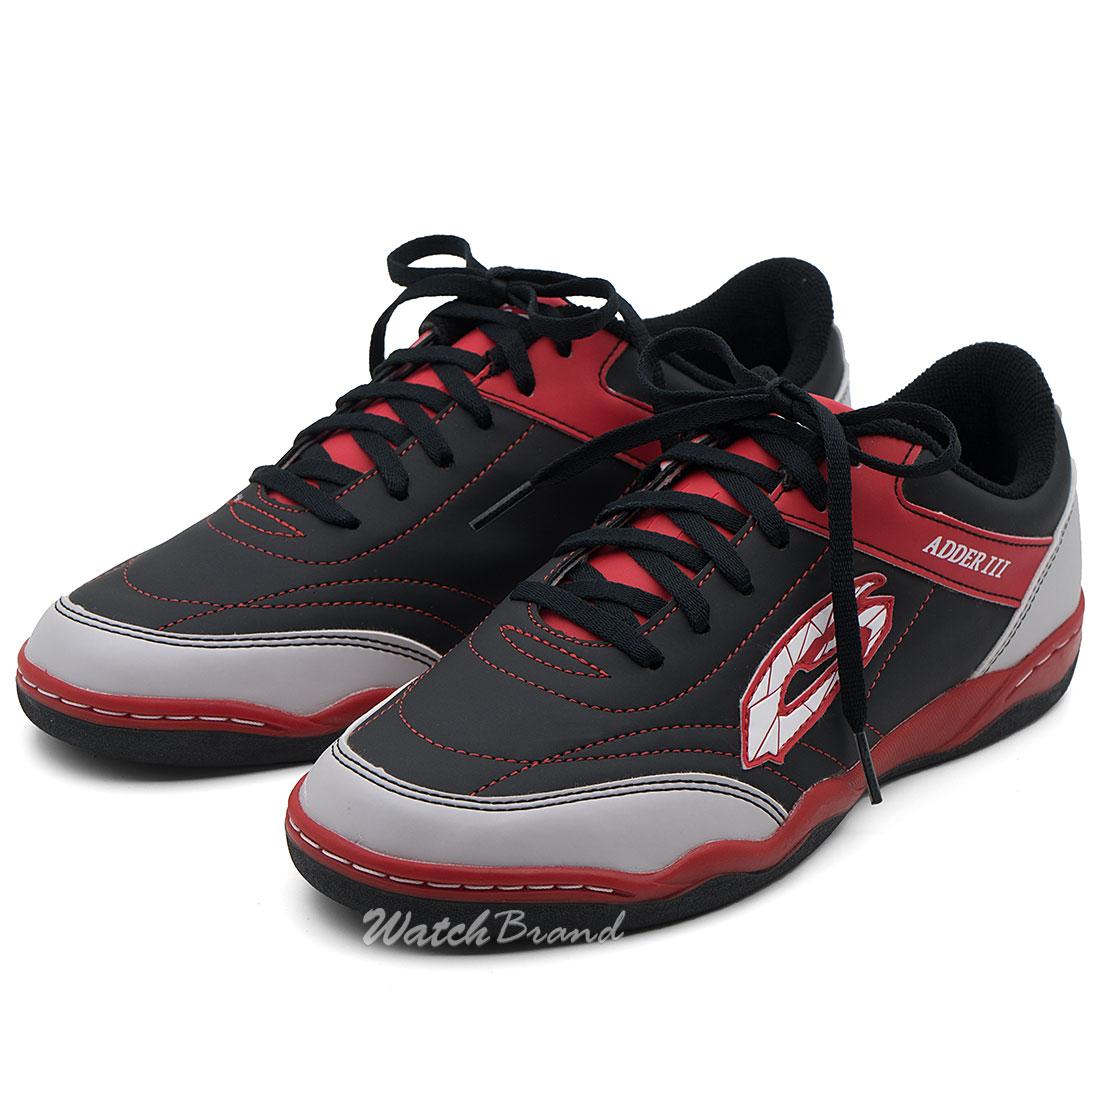 GIGA รองเท้าฟุตซอล รองเท้ากีฬา รุ่น FG412 สีดำ